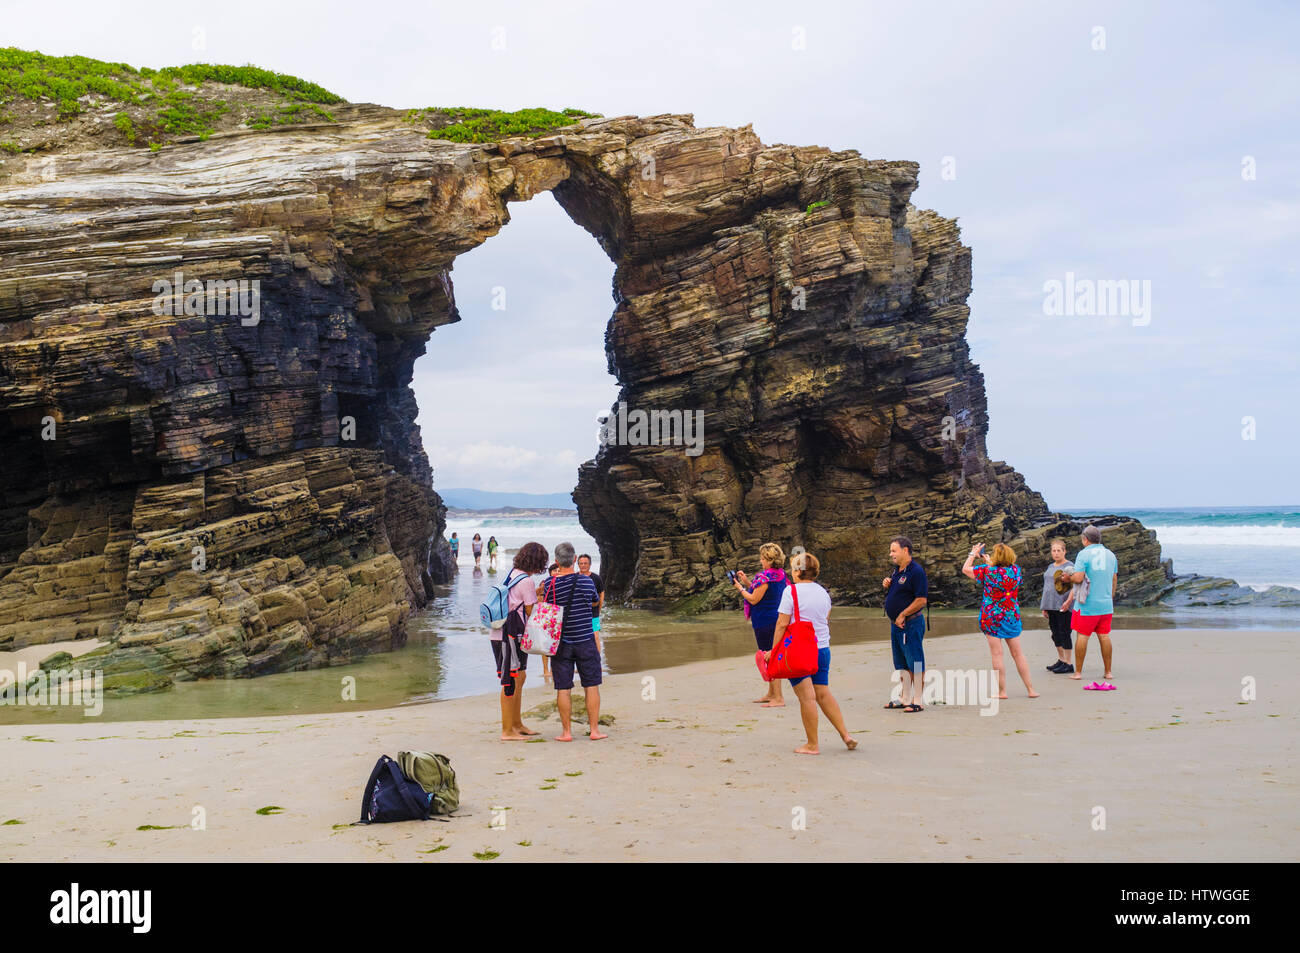 Groupe de touristes par une arche de pierre à la plage des Cathédrales monument naturel à ribadeo lugo province, municipalité, Galice, Espagne, Europe Banque D'Images